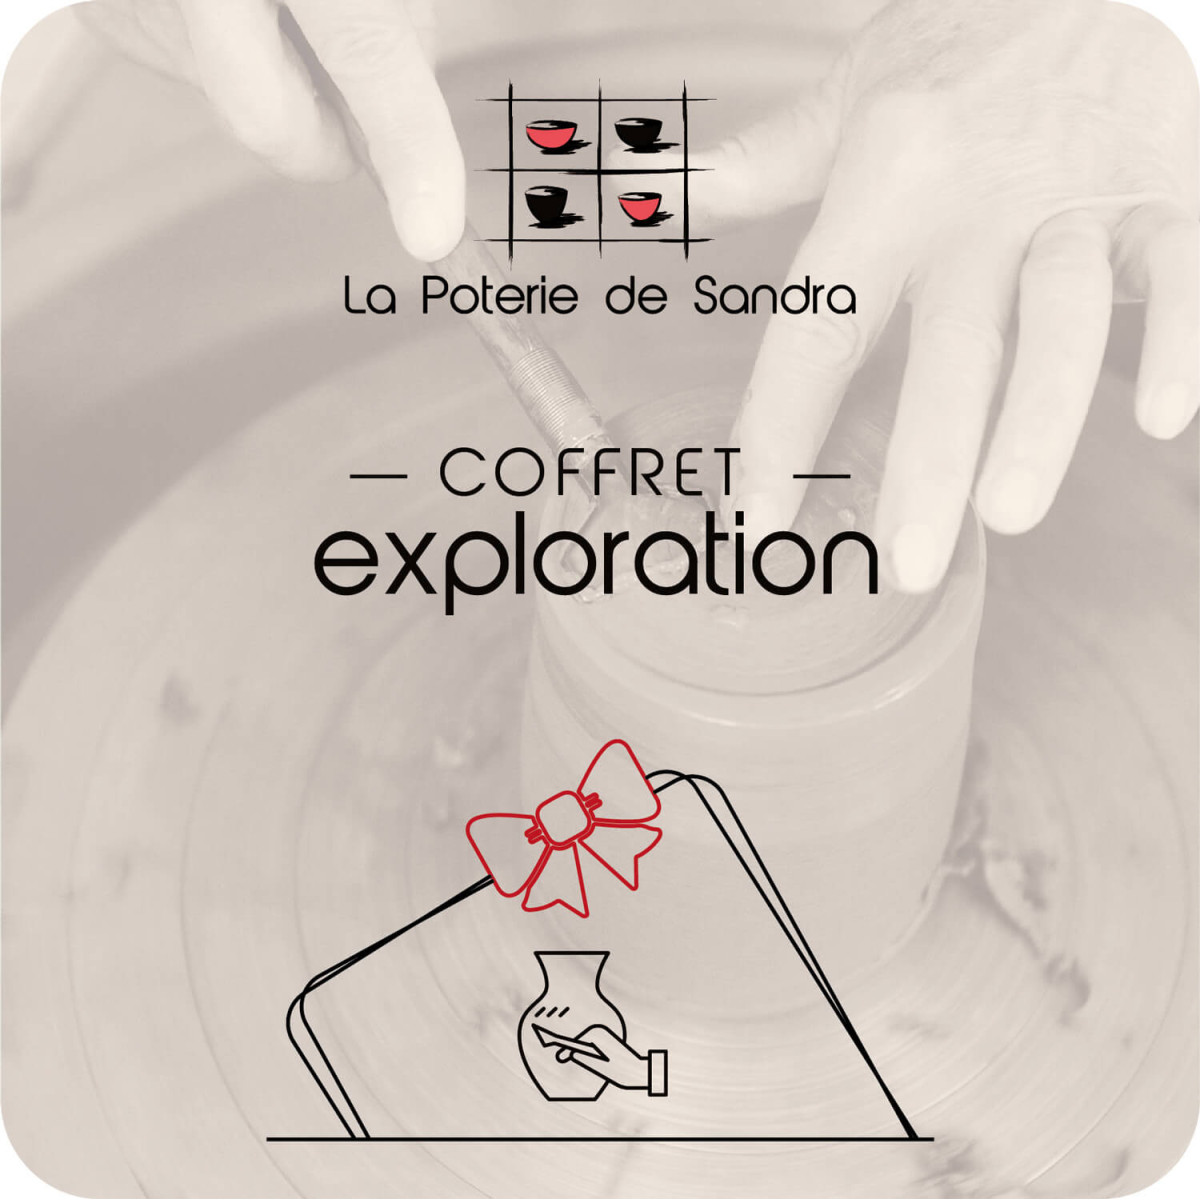 Coffret Exploration - La poterie de Sandra & Co